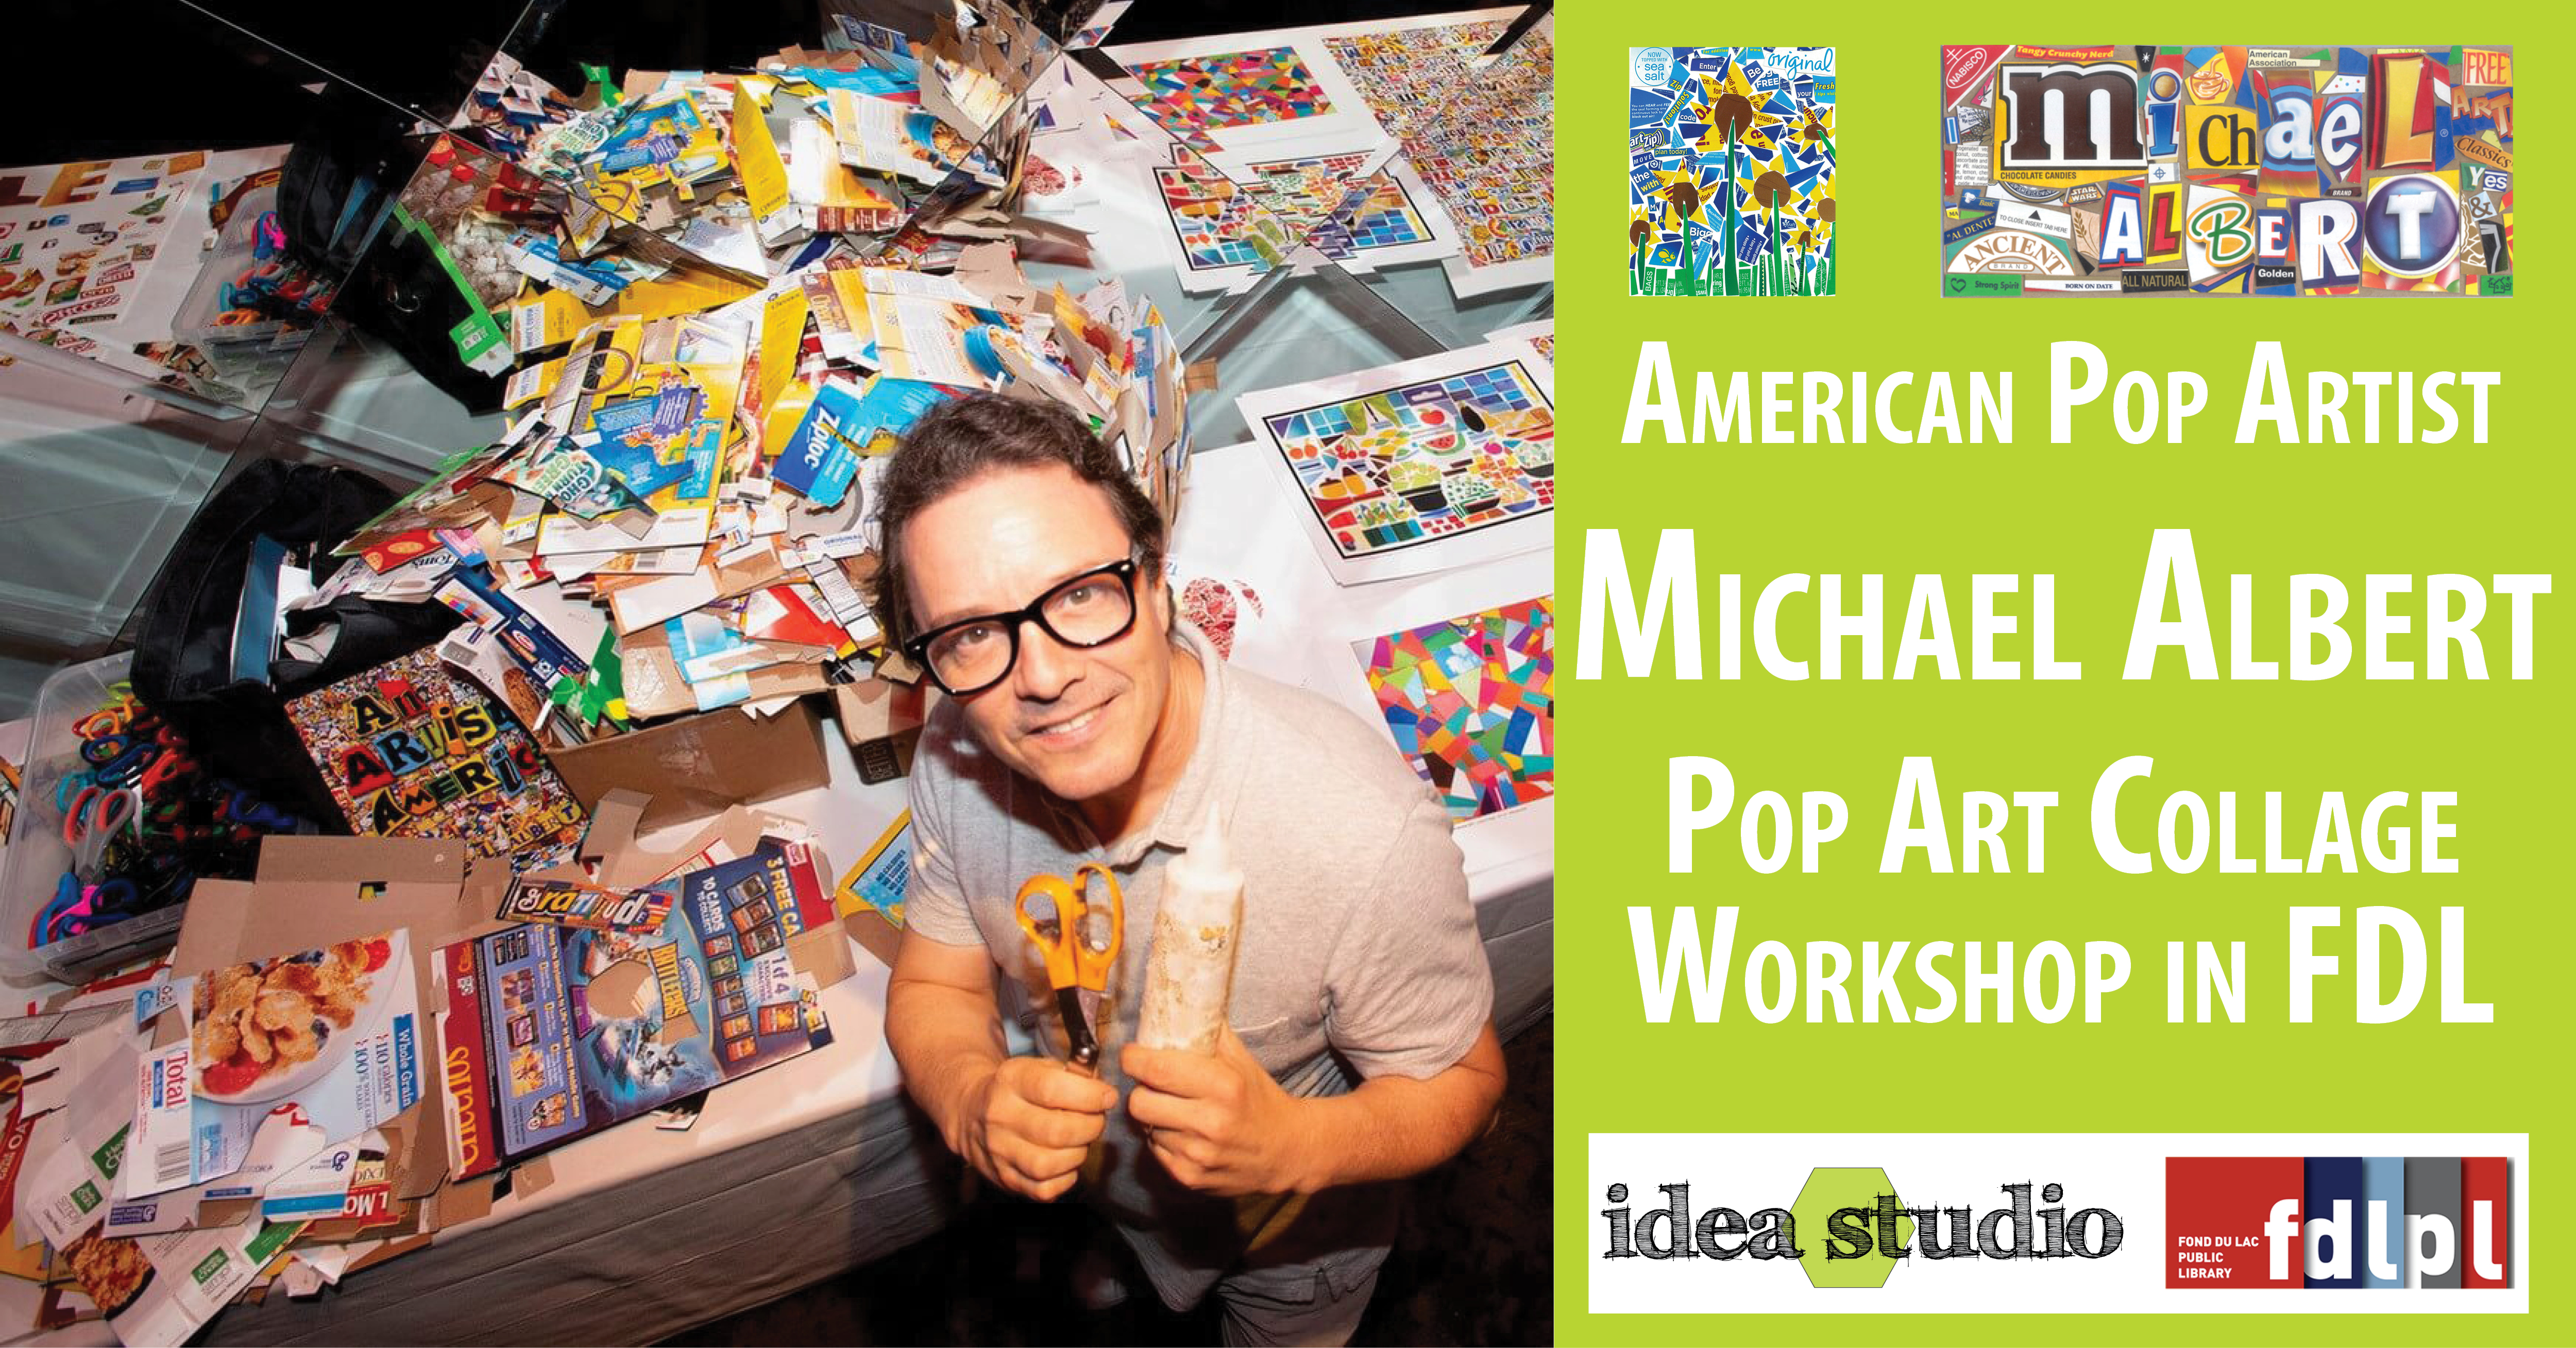 Meet author & pop artist Michael Albert June 16-17